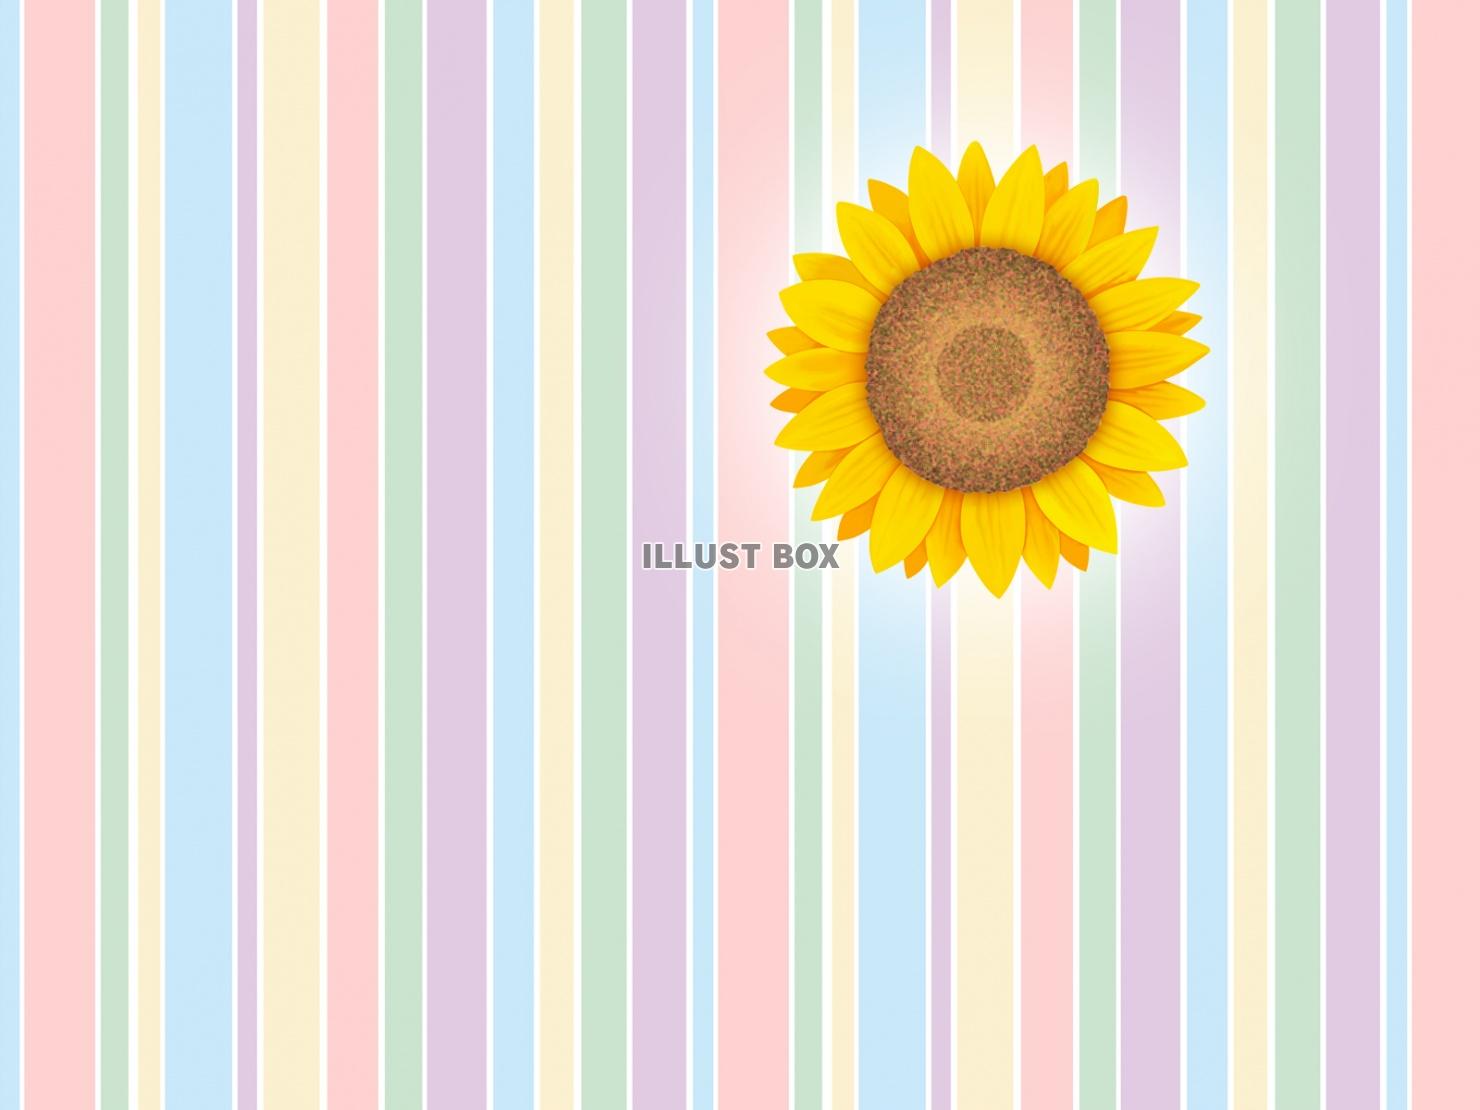 無料イラスト 向日葵の花柄と縞模様の壁紙シンプル背景素材イラスト